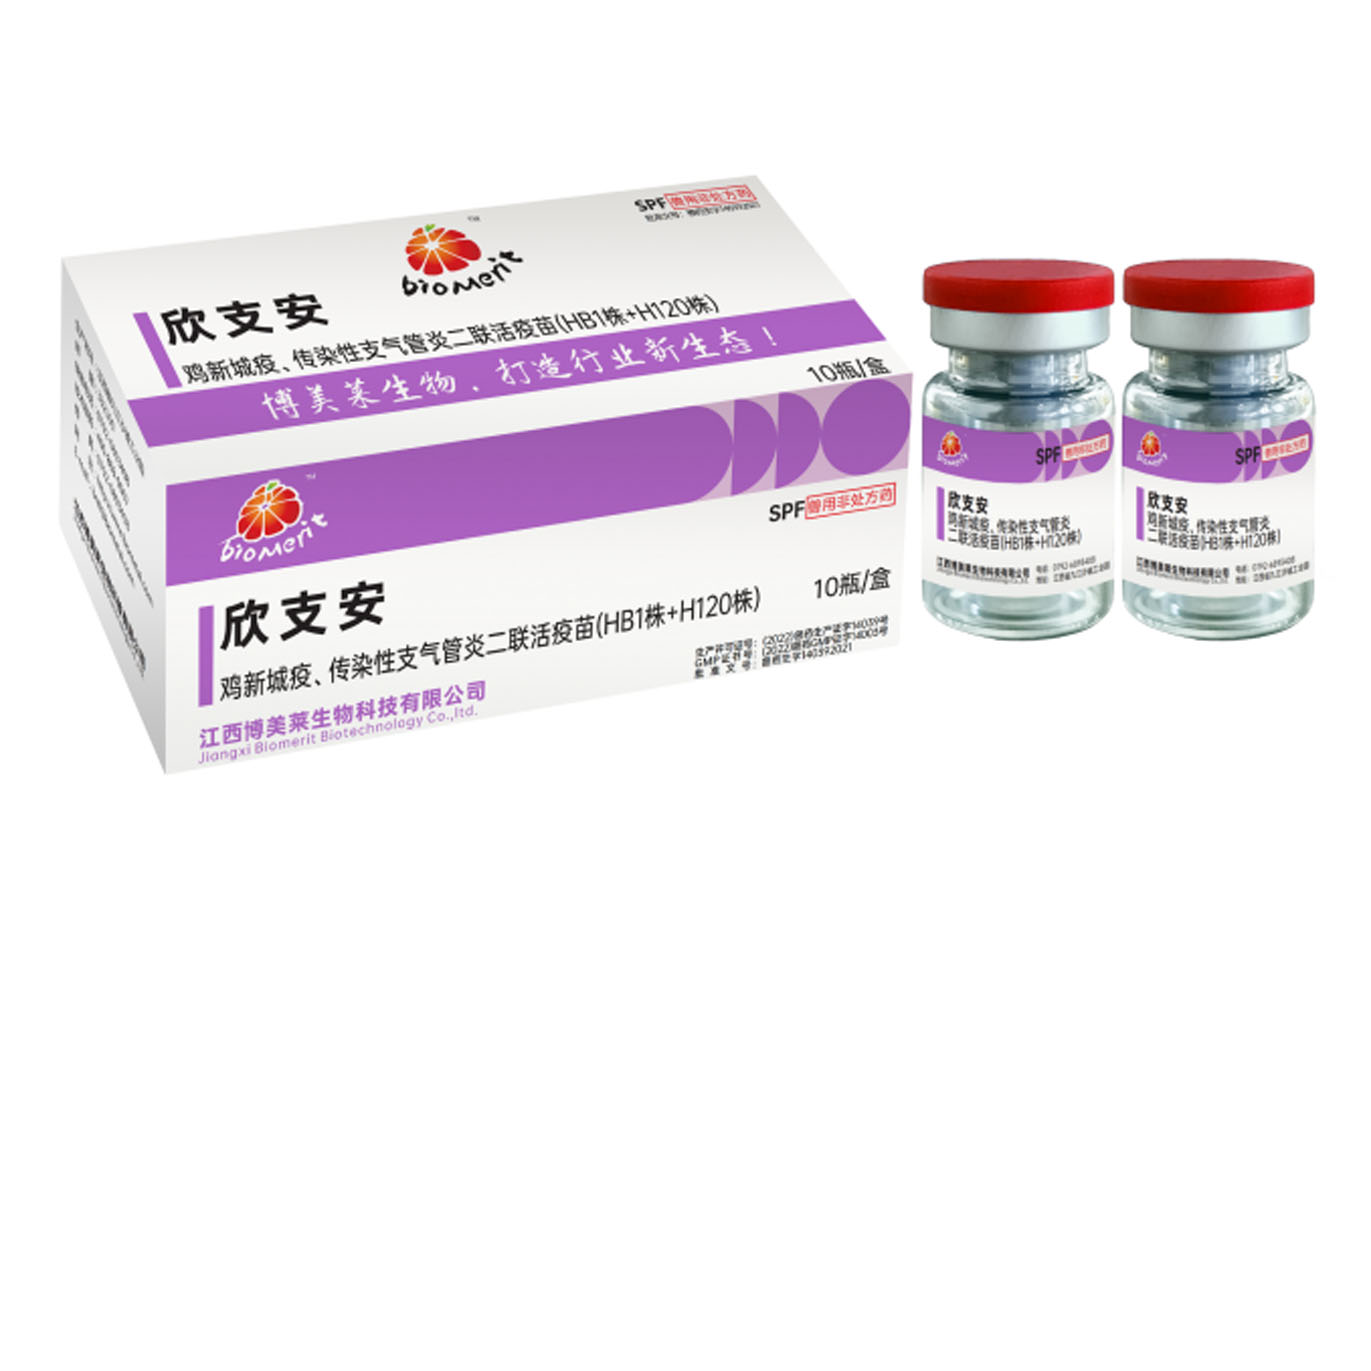 欣支安—鸡新城疫、鸡传染性支气管炎二联活疫苗（HB1株+H120株）